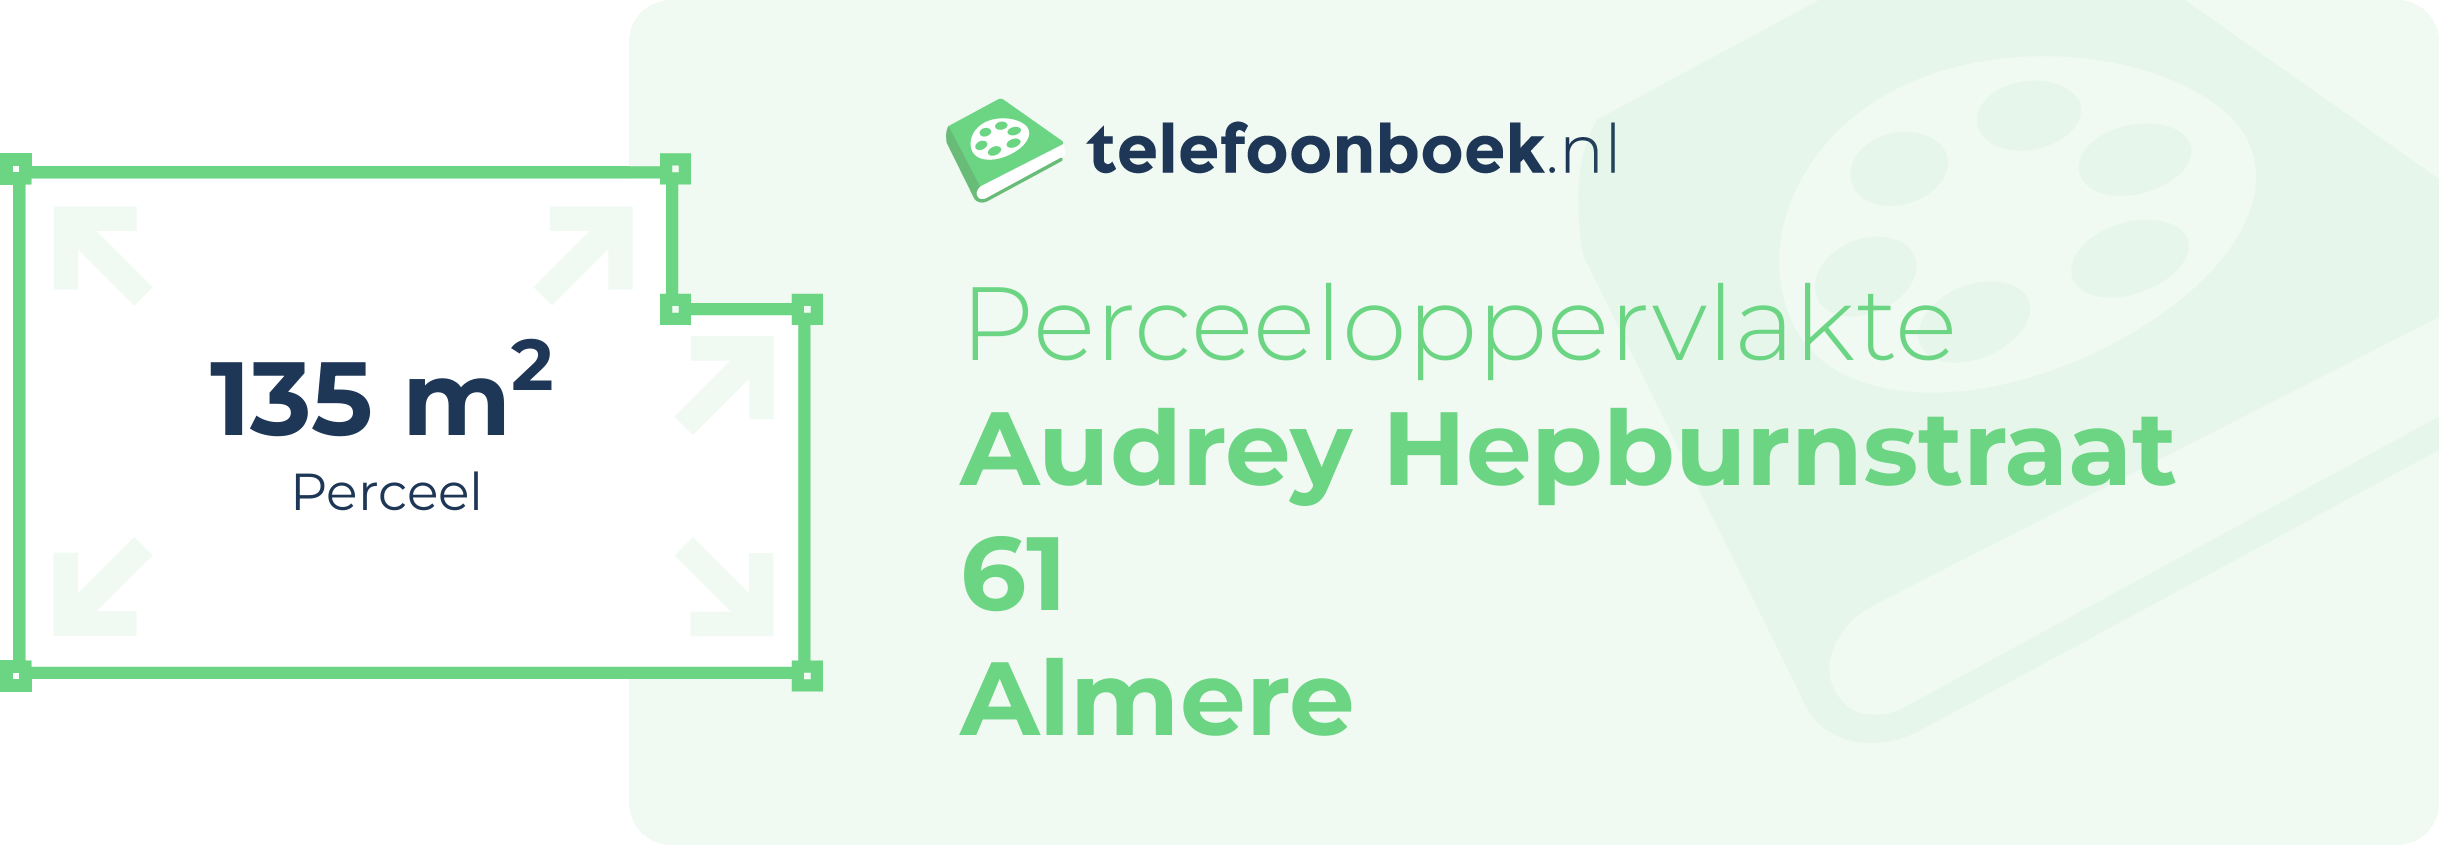 Perceeloppervlakte Audrey Hepburnstraat 61 Almere